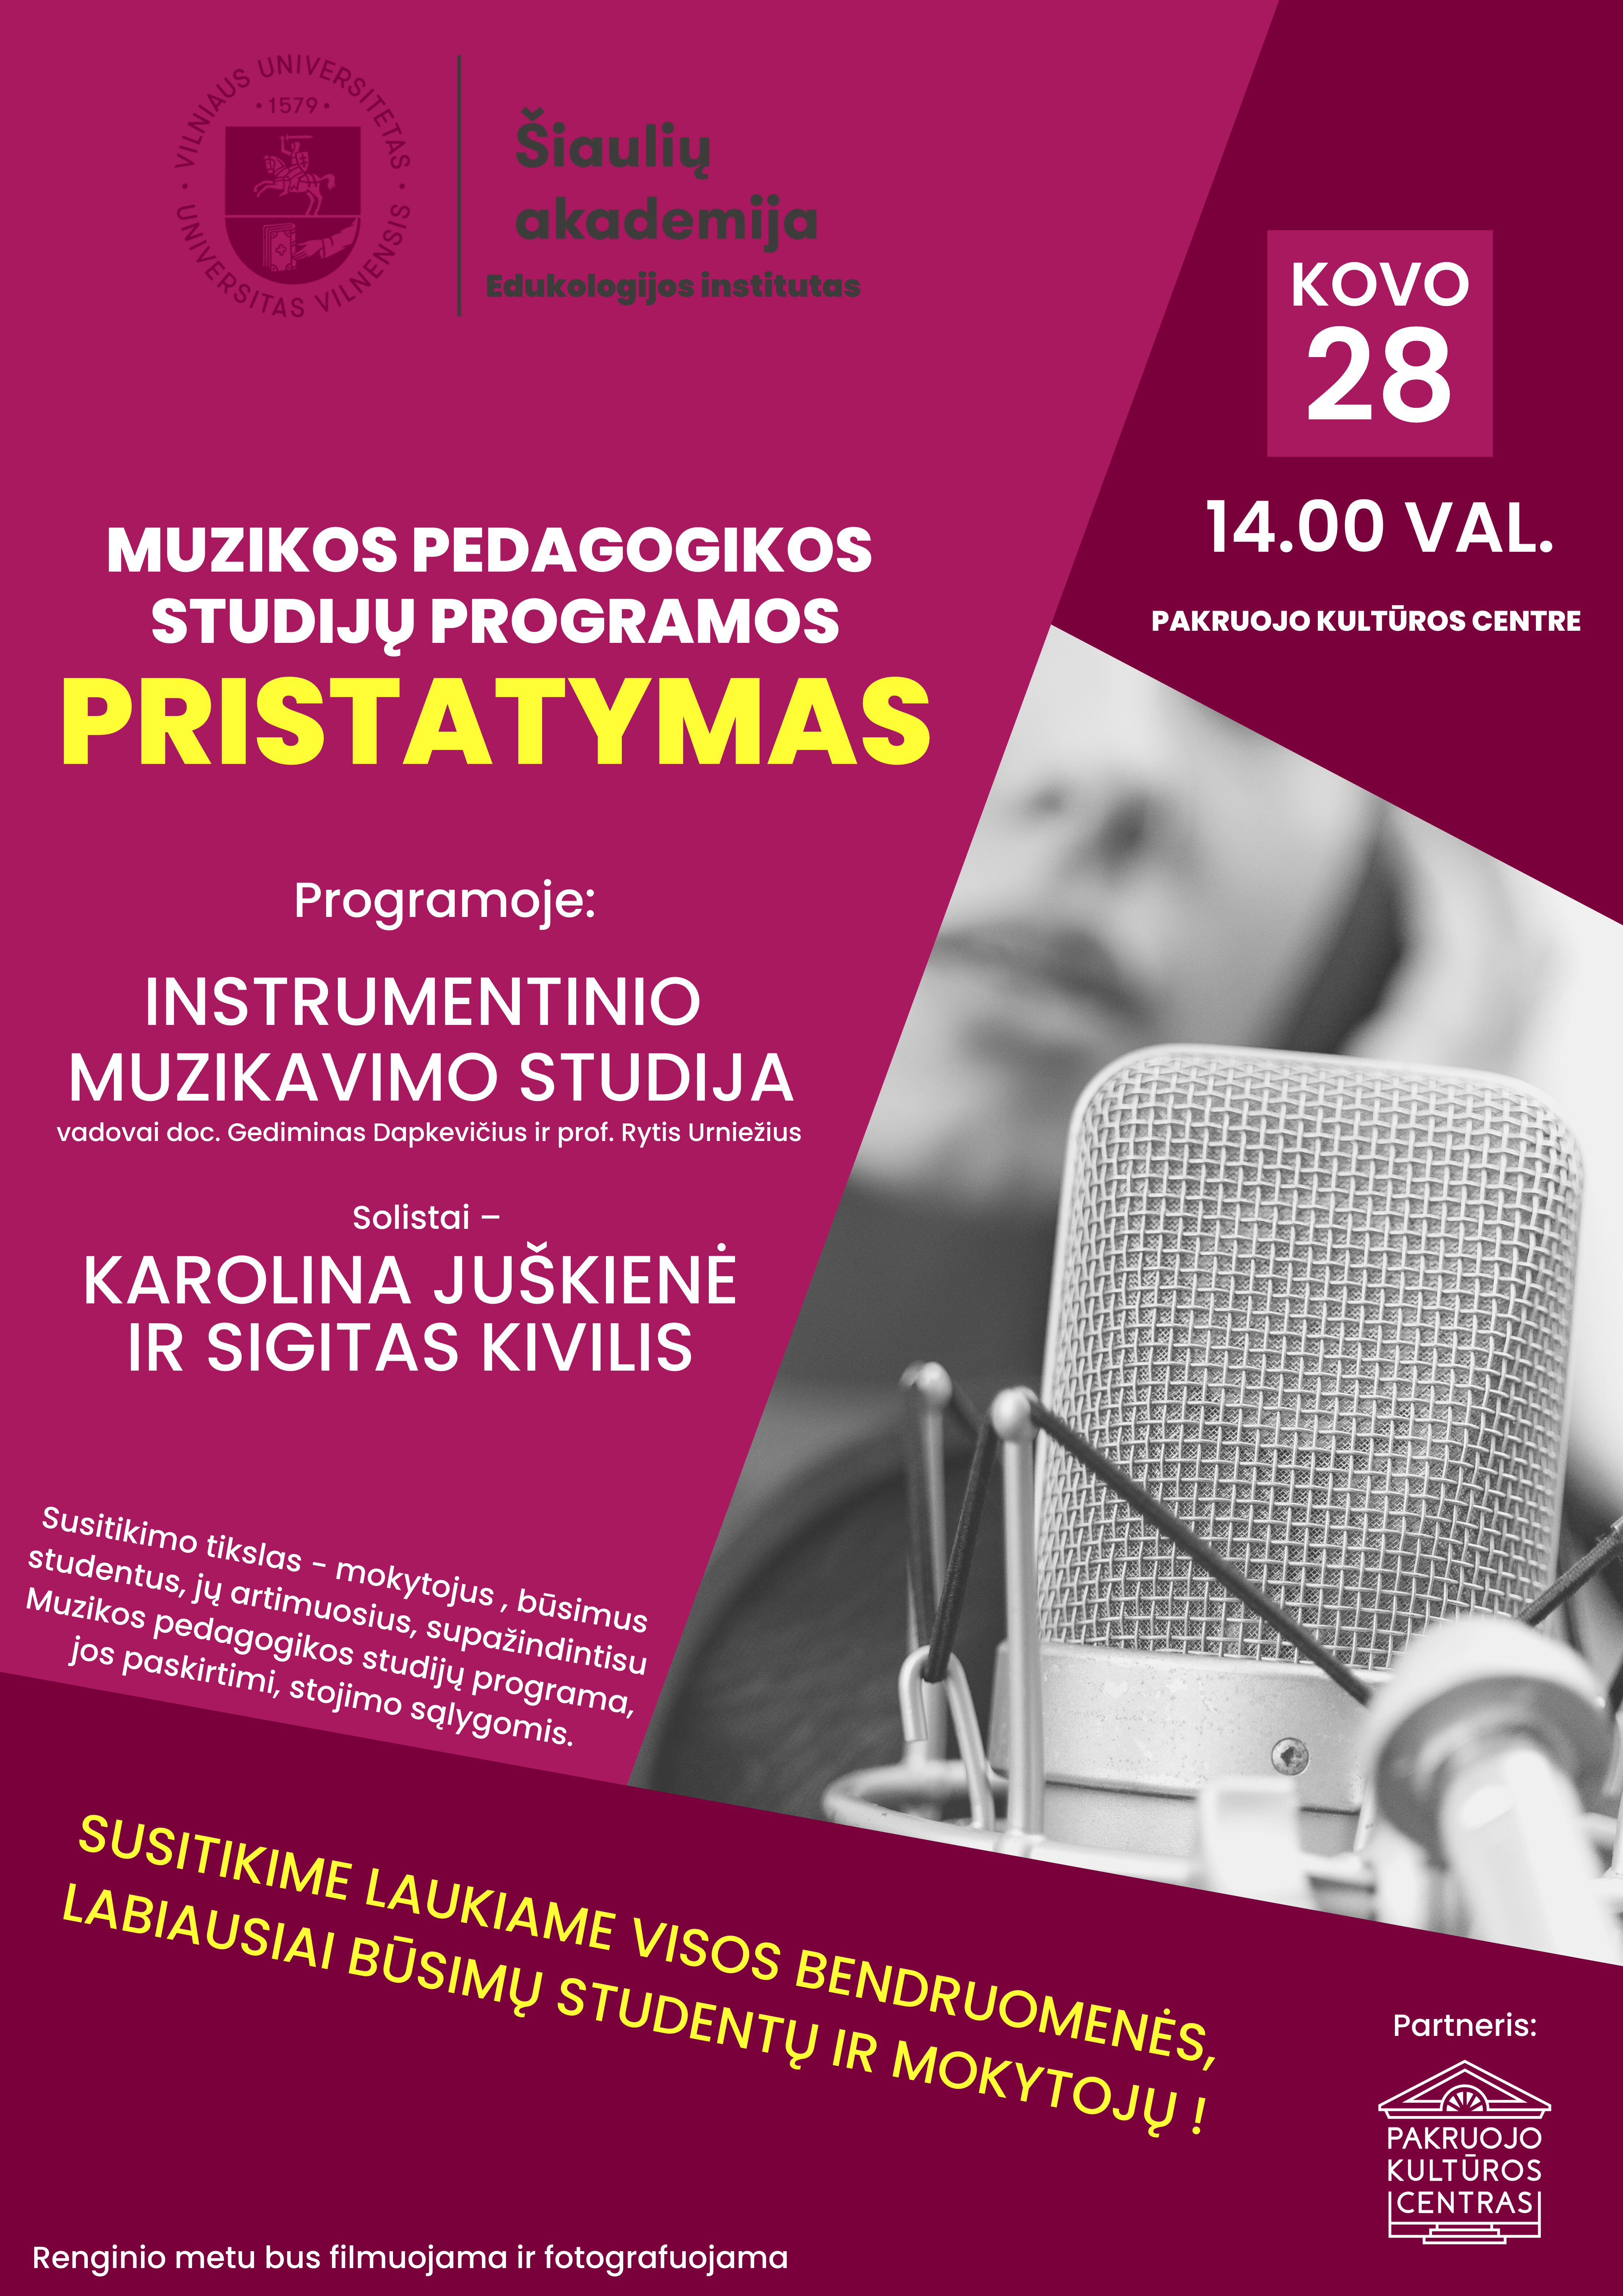 PAKRUOJIS: Svečiuose Vilniaus universitetas-Šiaulių akademija. Programos pristatymas